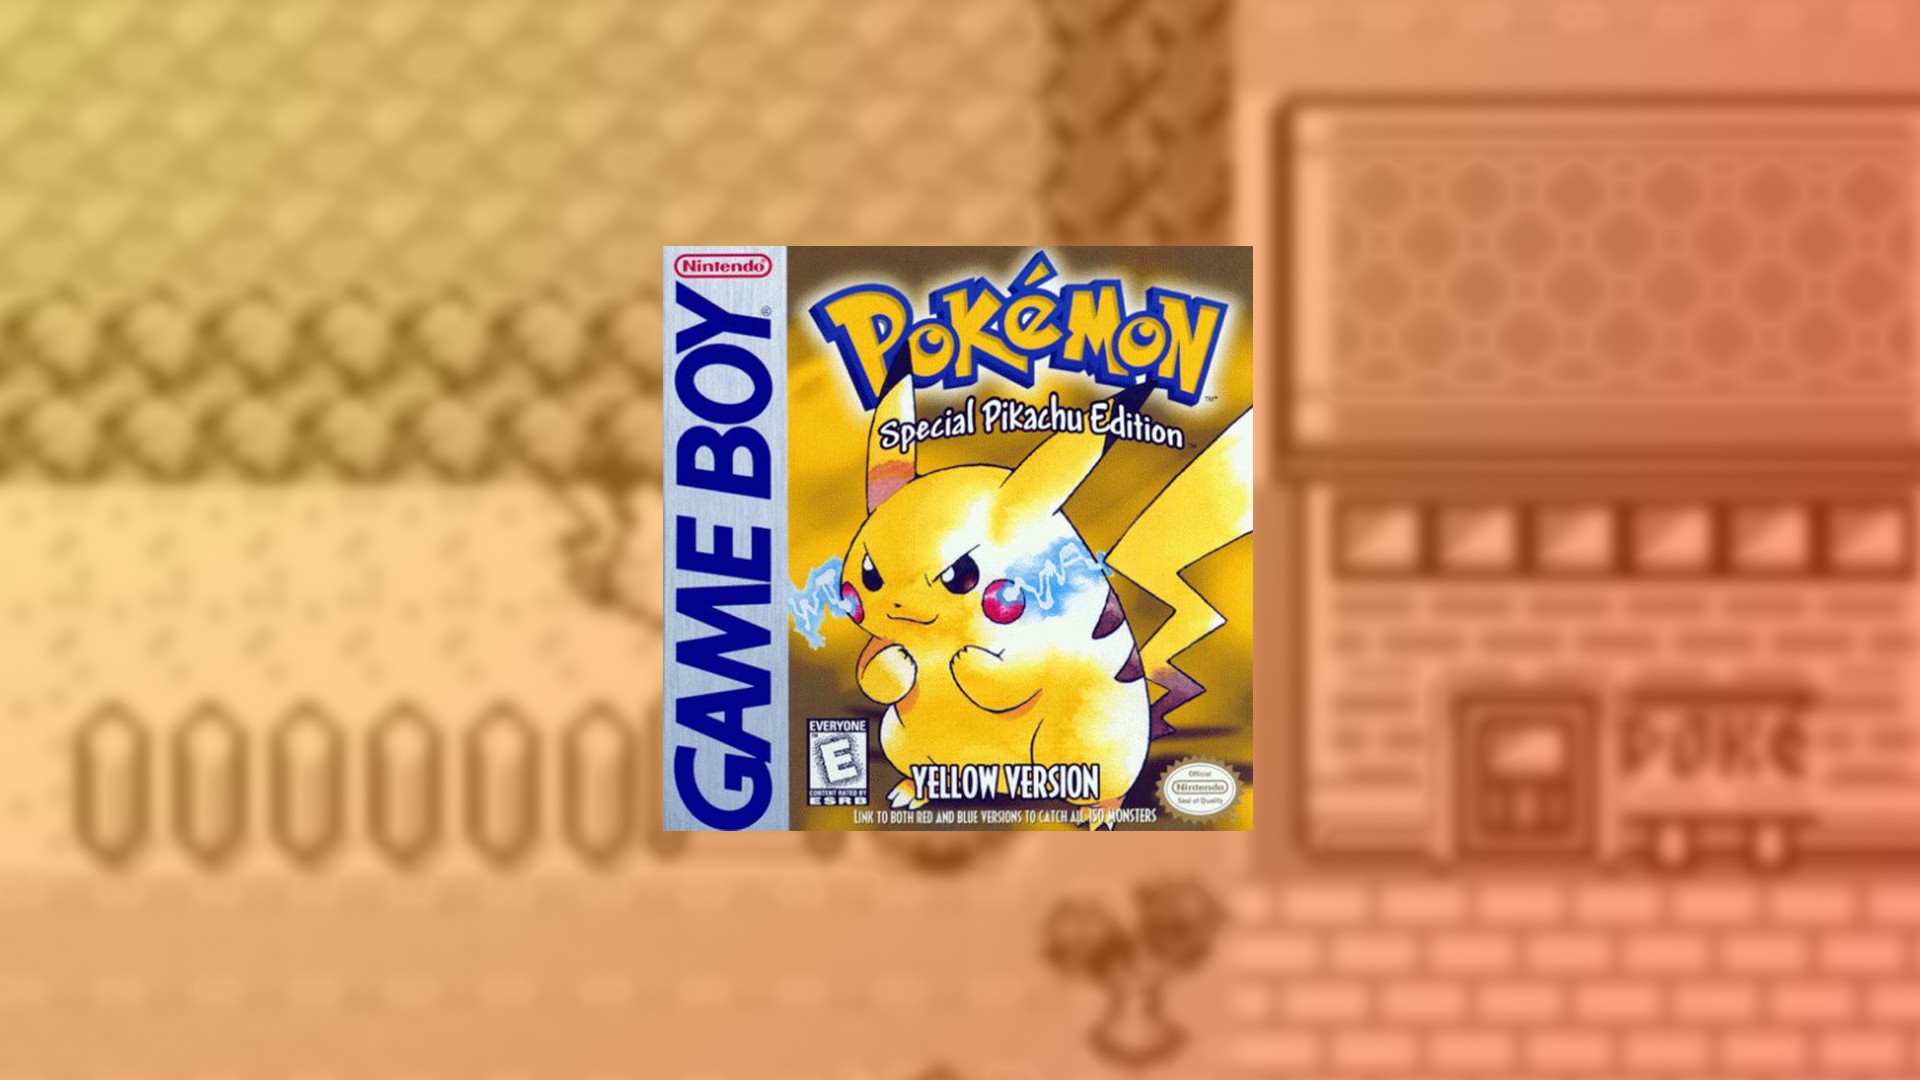 Pokémon Yellow em Português PT-BR do Game Boy Color no Celular Android 